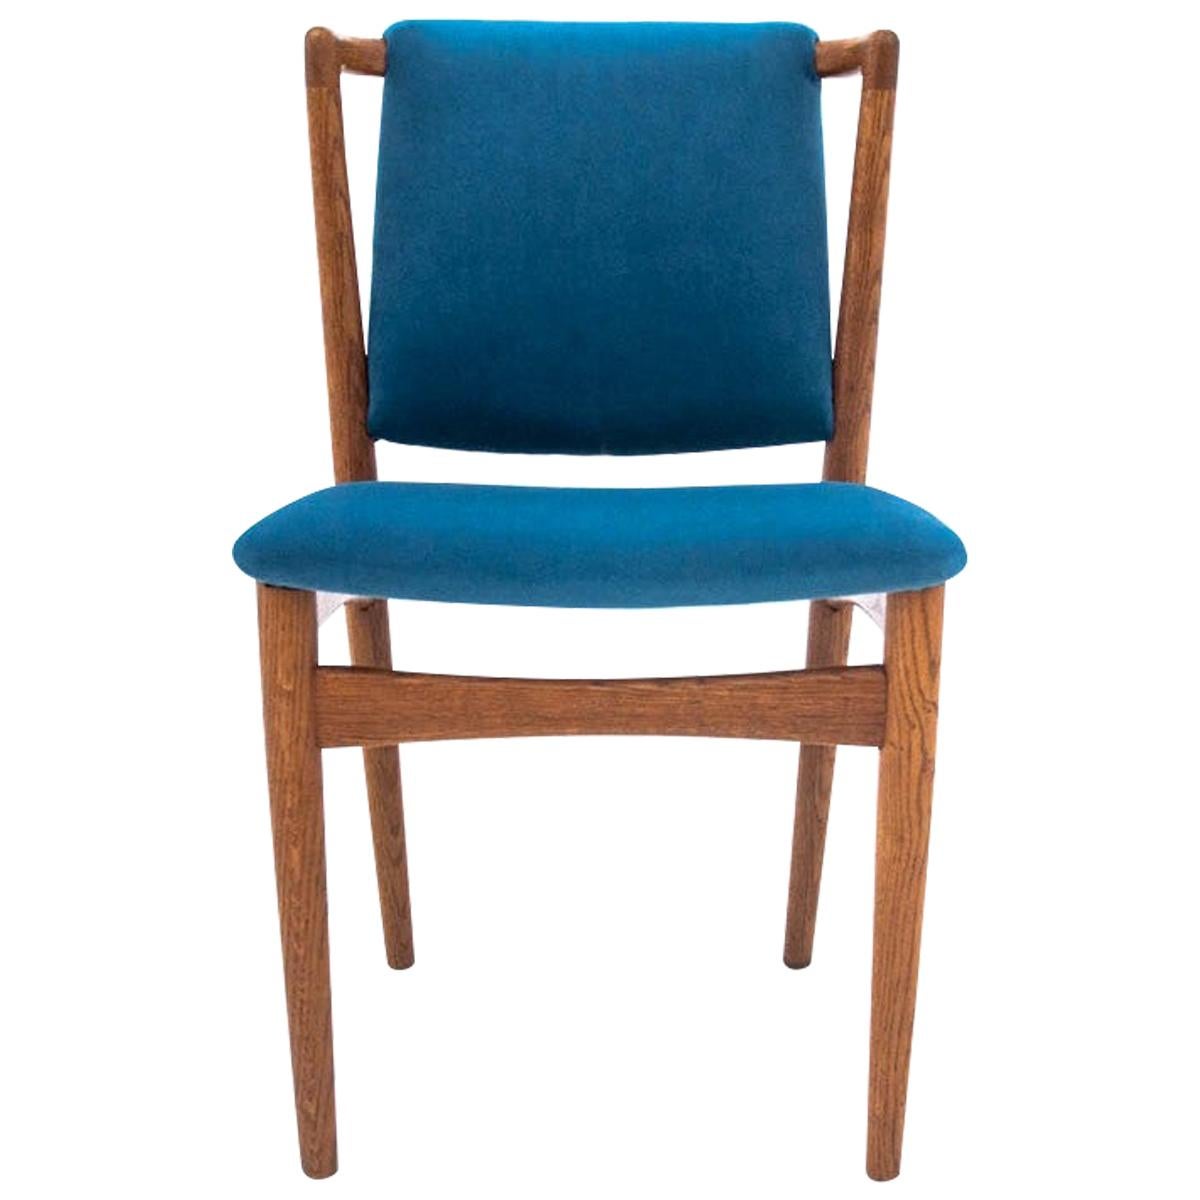 Teak Chair, Denmark, 1950s, Renovated